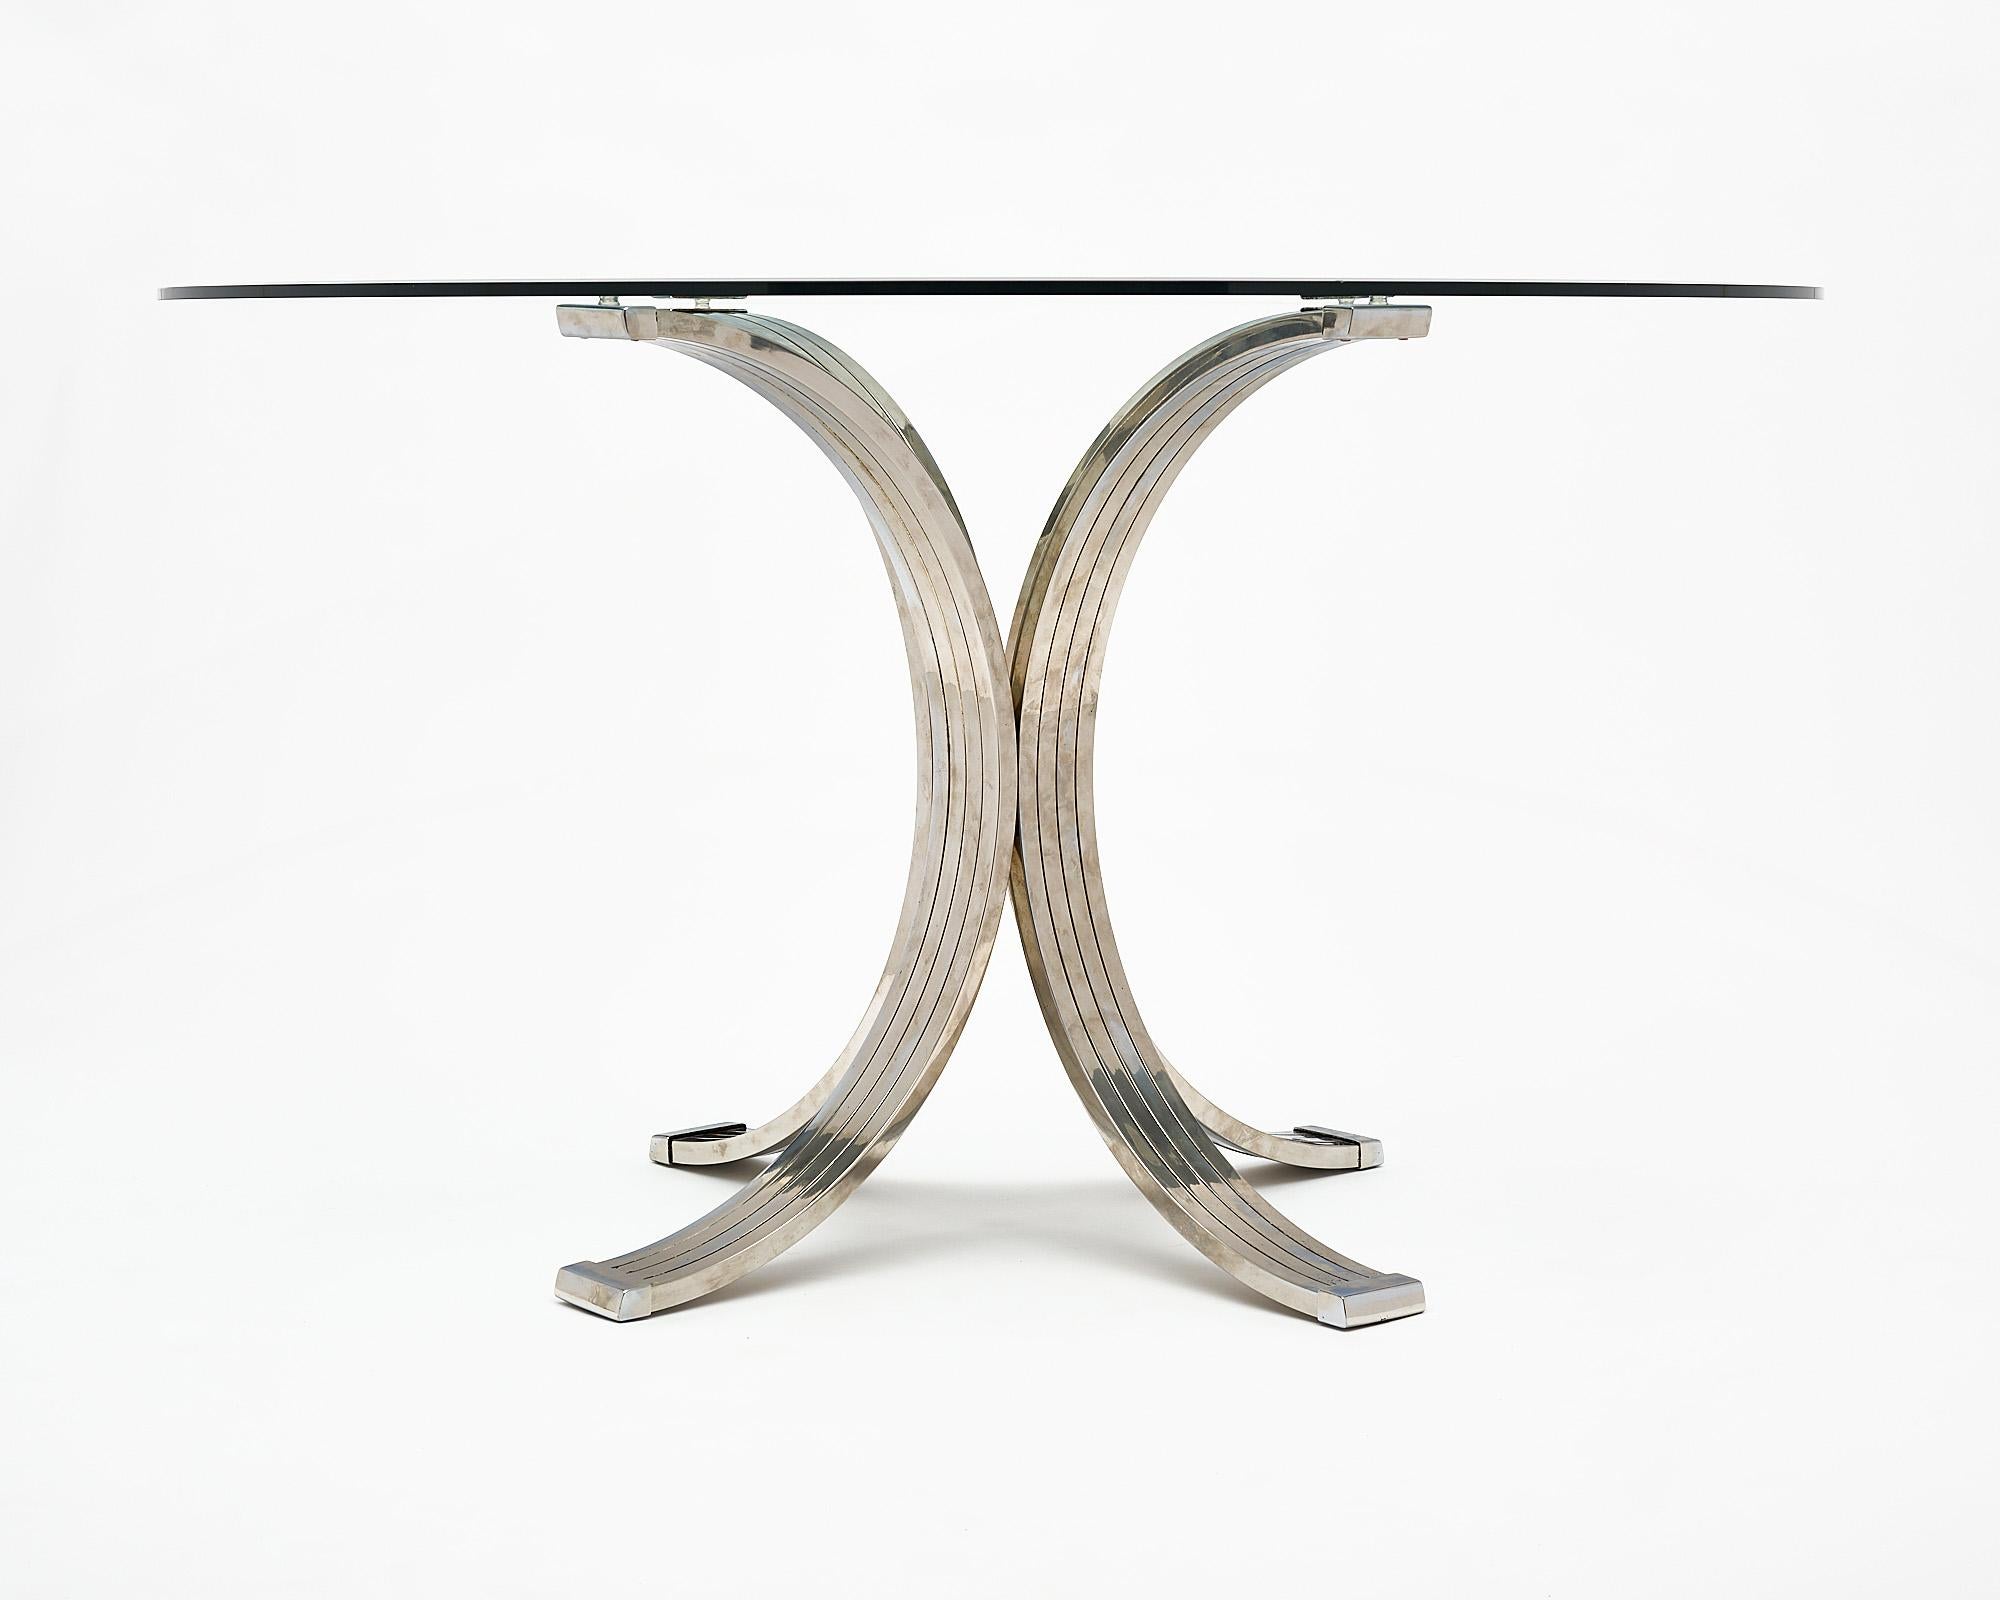 Table ronde, d'origine italienne, attribuée au designer emblématique Romeo Rega. Cette table est dotée d'un plateau en verre avec biseau et d'une base comportant quatre éléments arqués en laiton et en acier chromé.